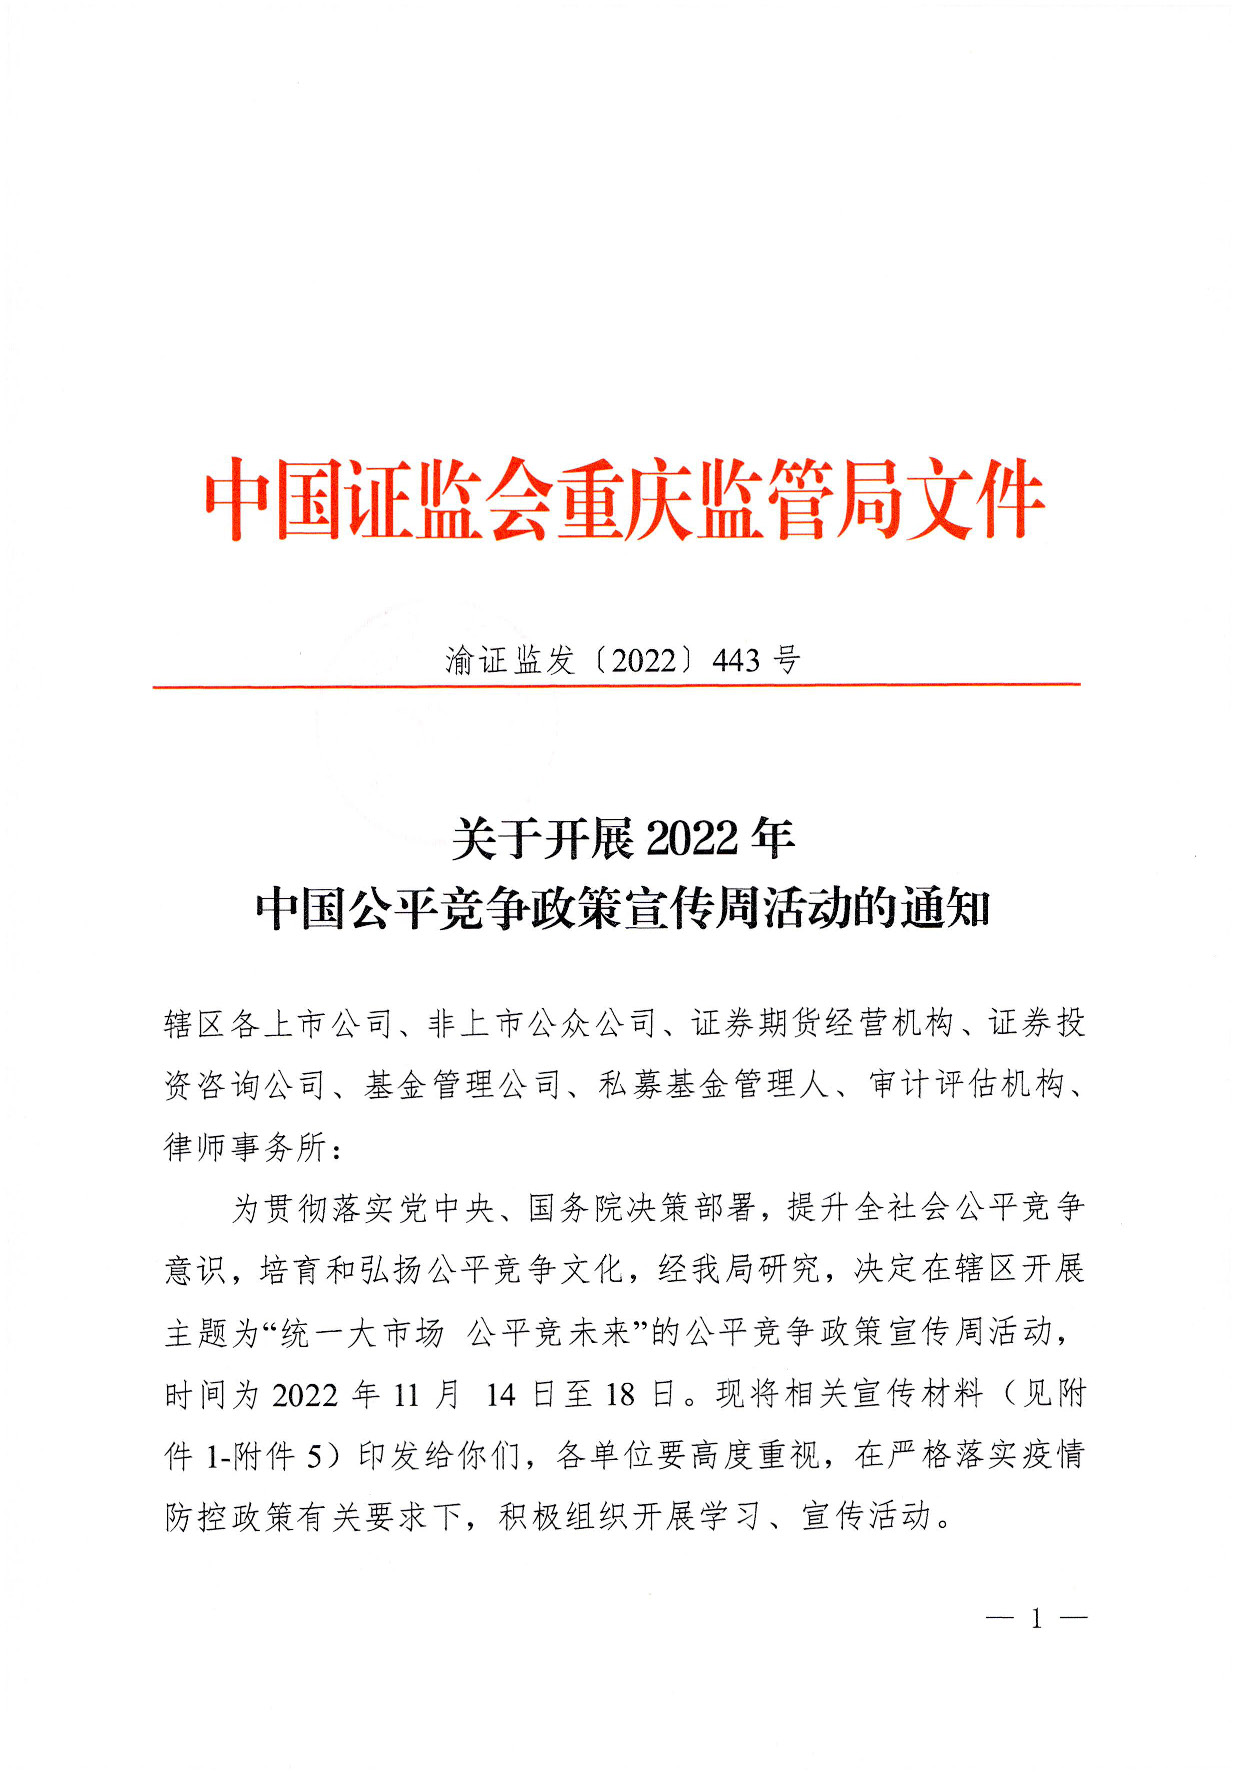 关于开展2022年中国公平竞争政策宣传周活动的通知_页面_1.jpg